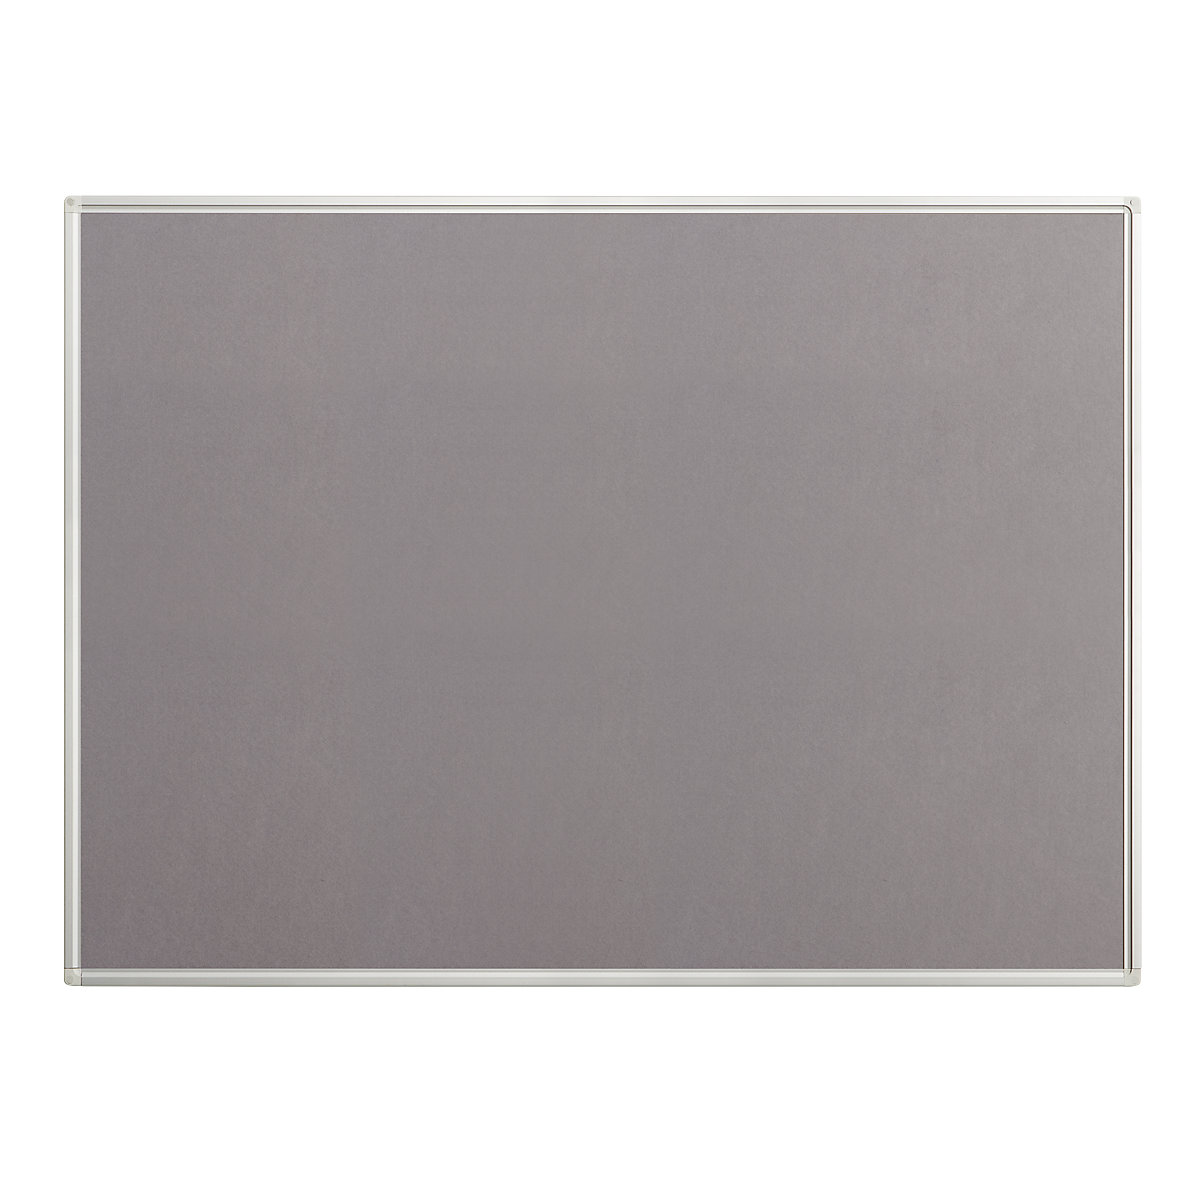 Tablica, filc, kolor szary, szer. x wys. 1200 x 900 mm